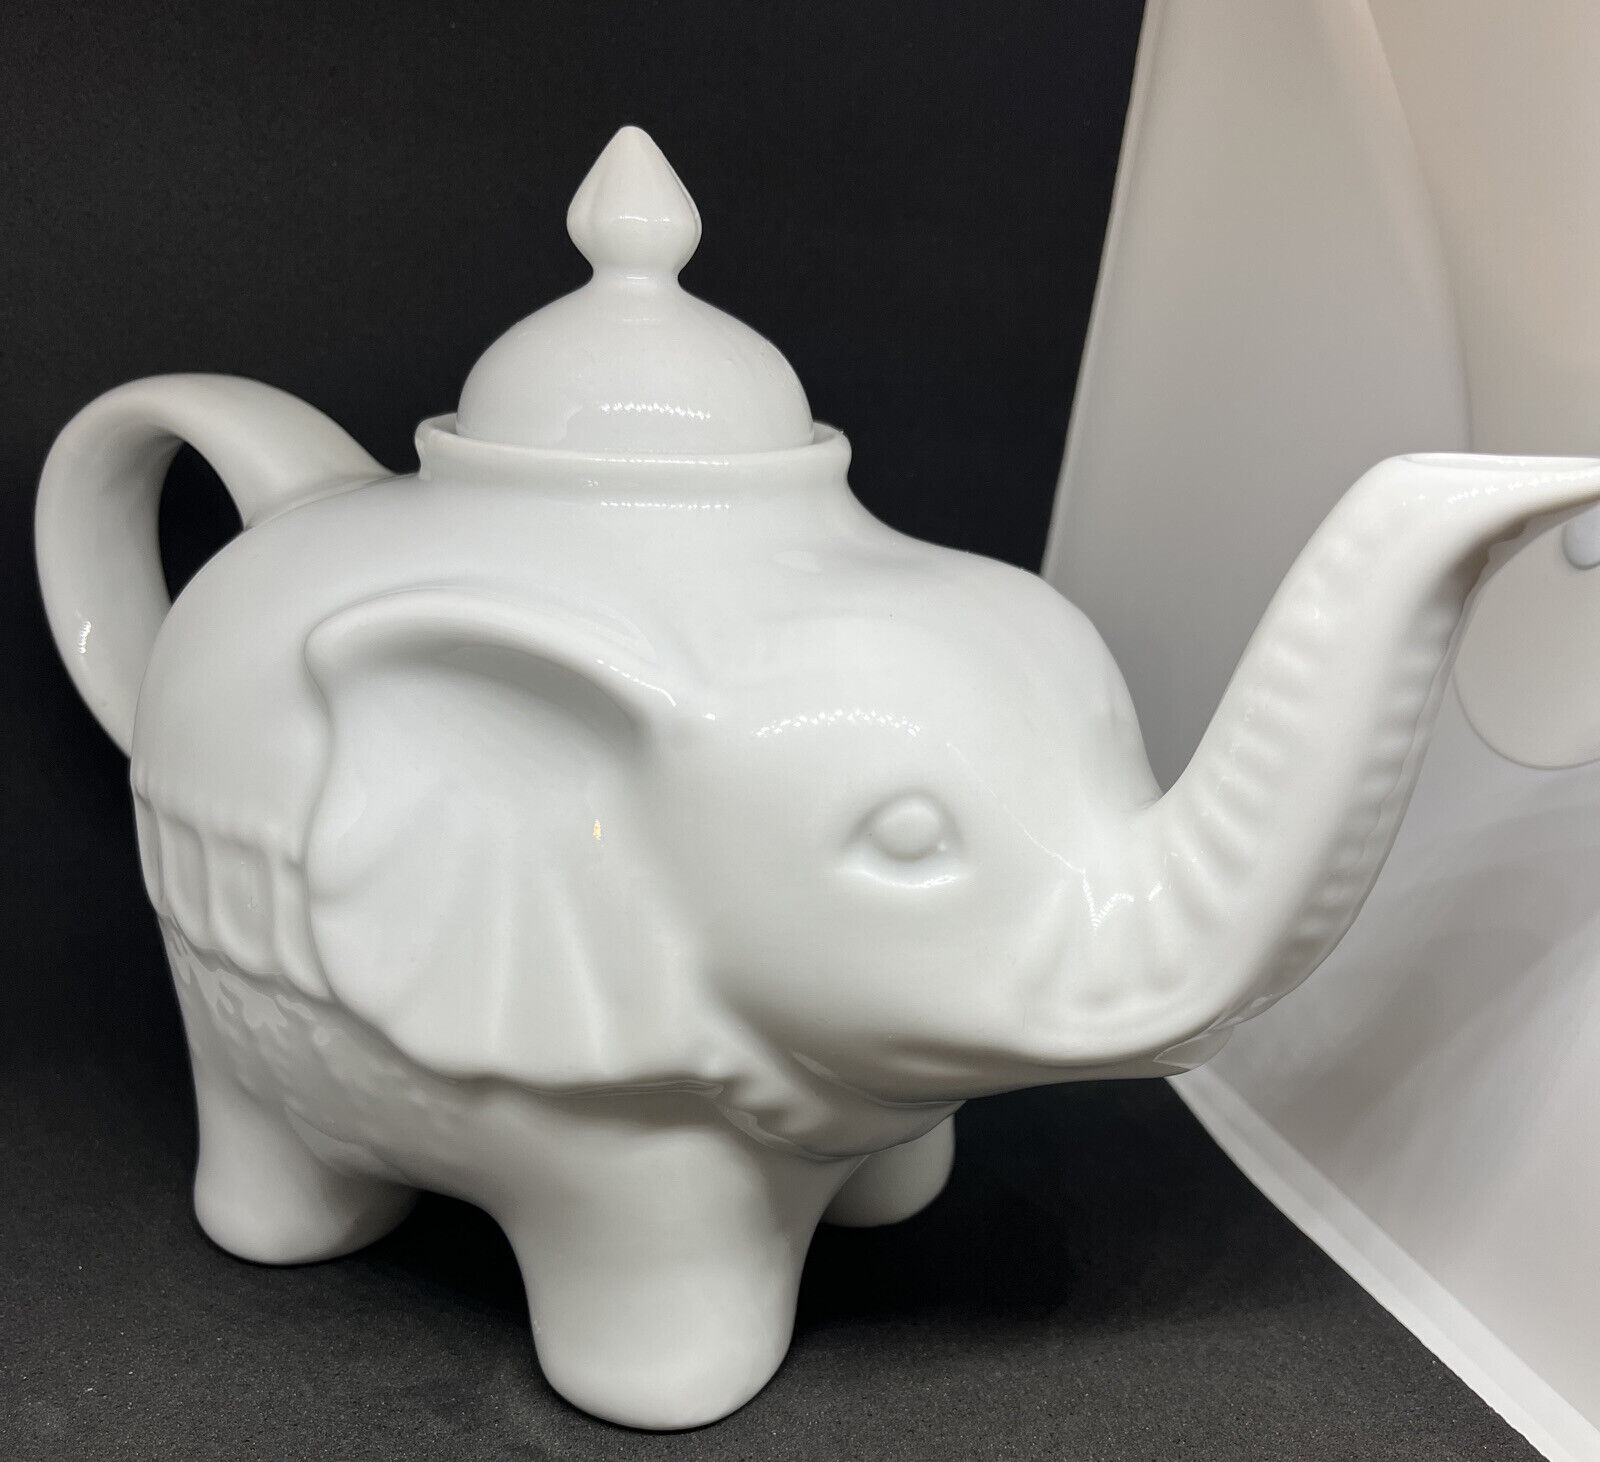 UNUSED Cordon Bleu White Ceramic Elephant Tea Pot Classic 28oz Kitchen Household